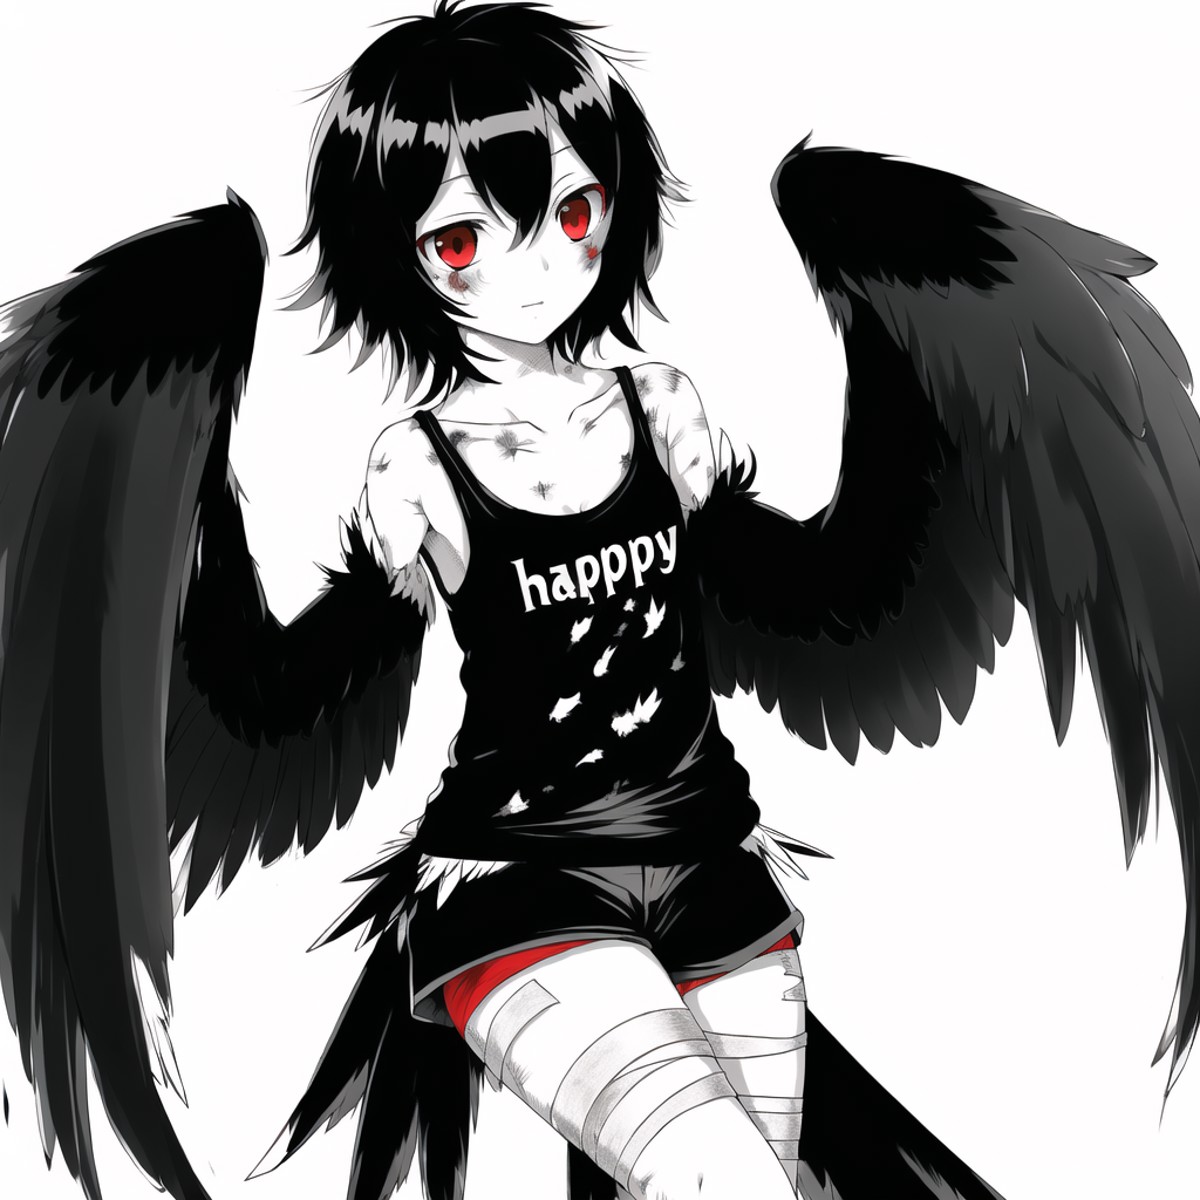 <lora:harpy-1_harpy-2--harpy-3_harpy-4:1.0>, 

(harpy:1.0,), (bird wings, bird legs:1.0), claws, bird tail,


black hair, ...